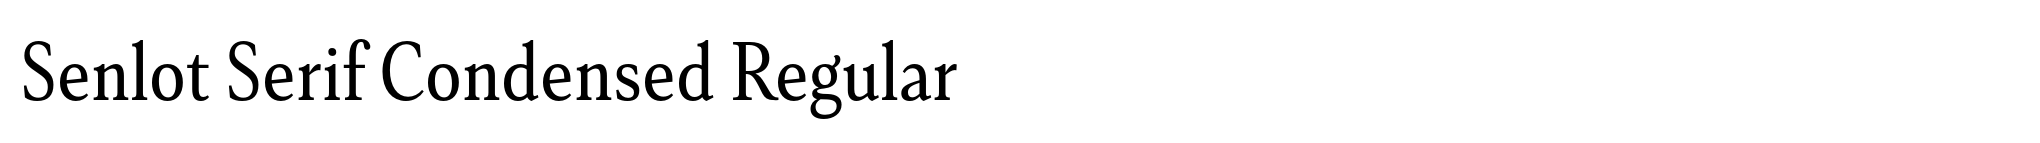 Senlot Serif Condensed Regular image